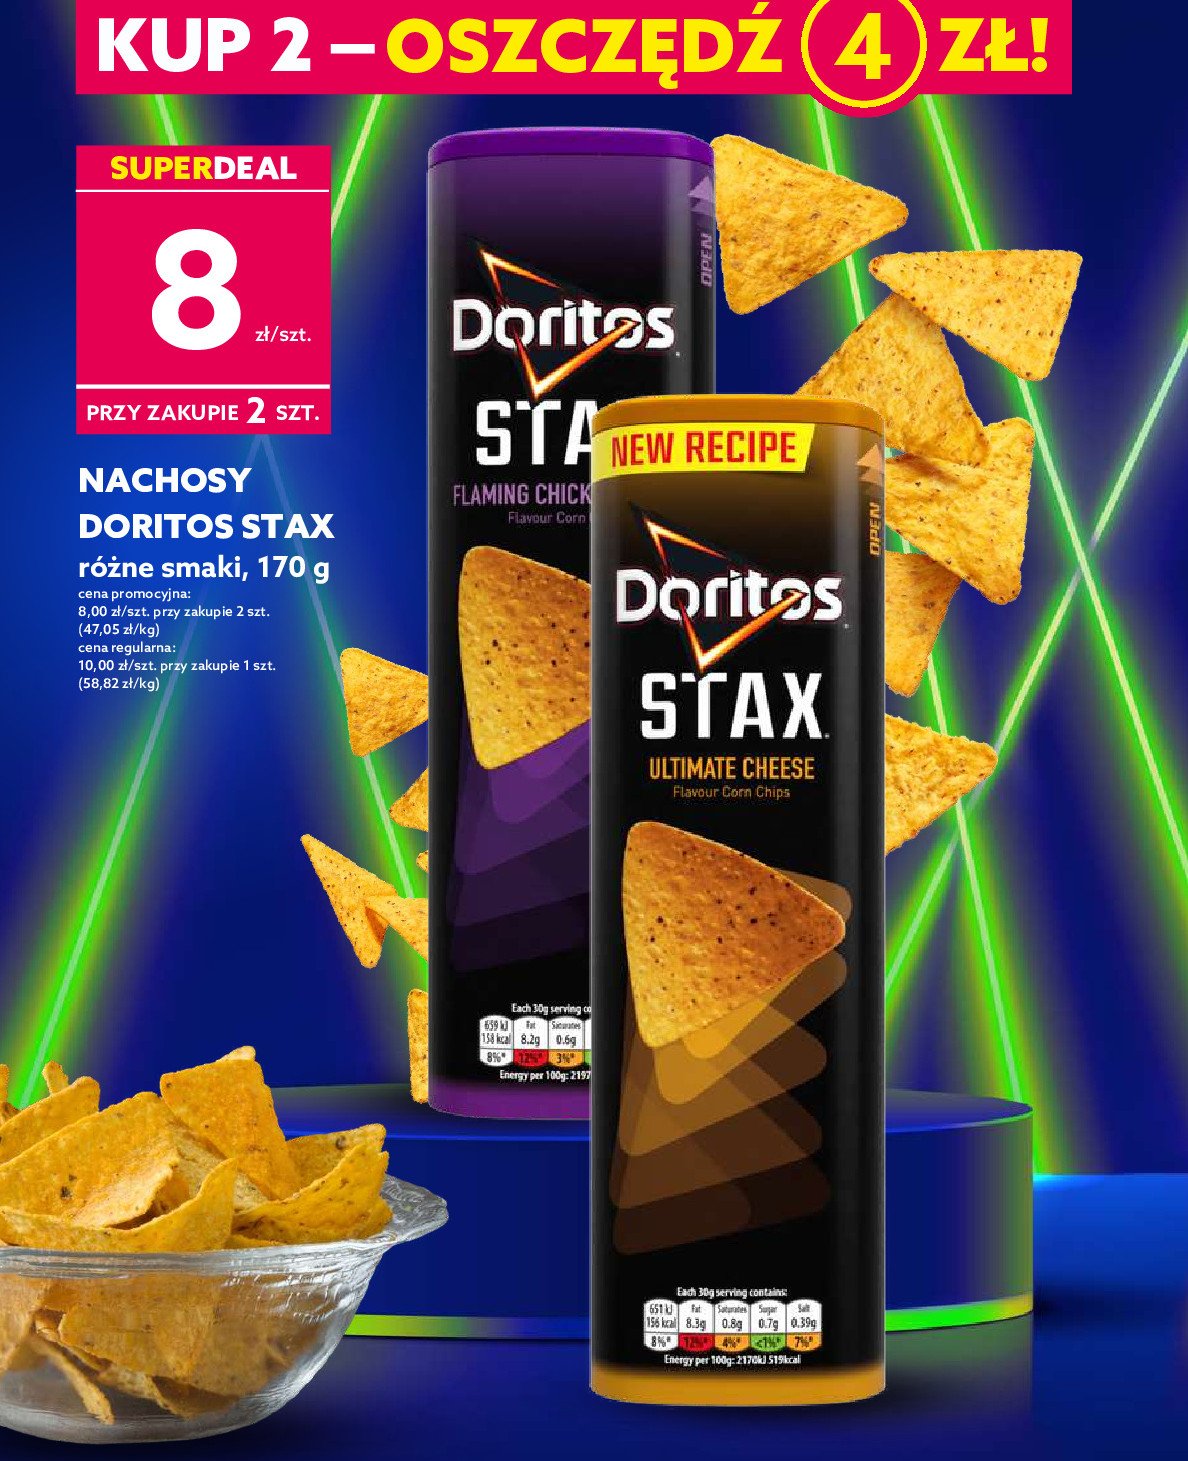 Chipsy ultimate cheese DORITOS STAX Frito lay doritos promocja